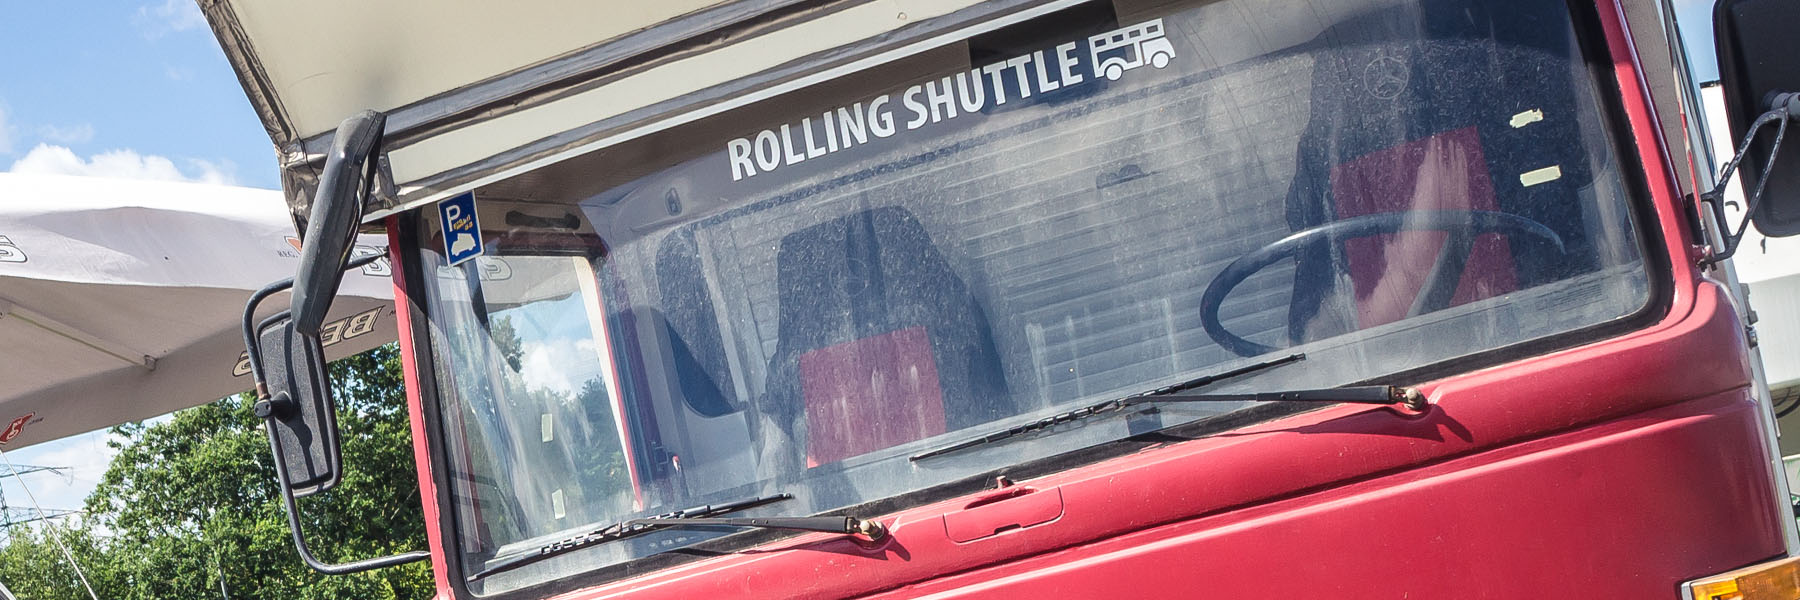 Rolling Shuttle, Kontakt, Headimg